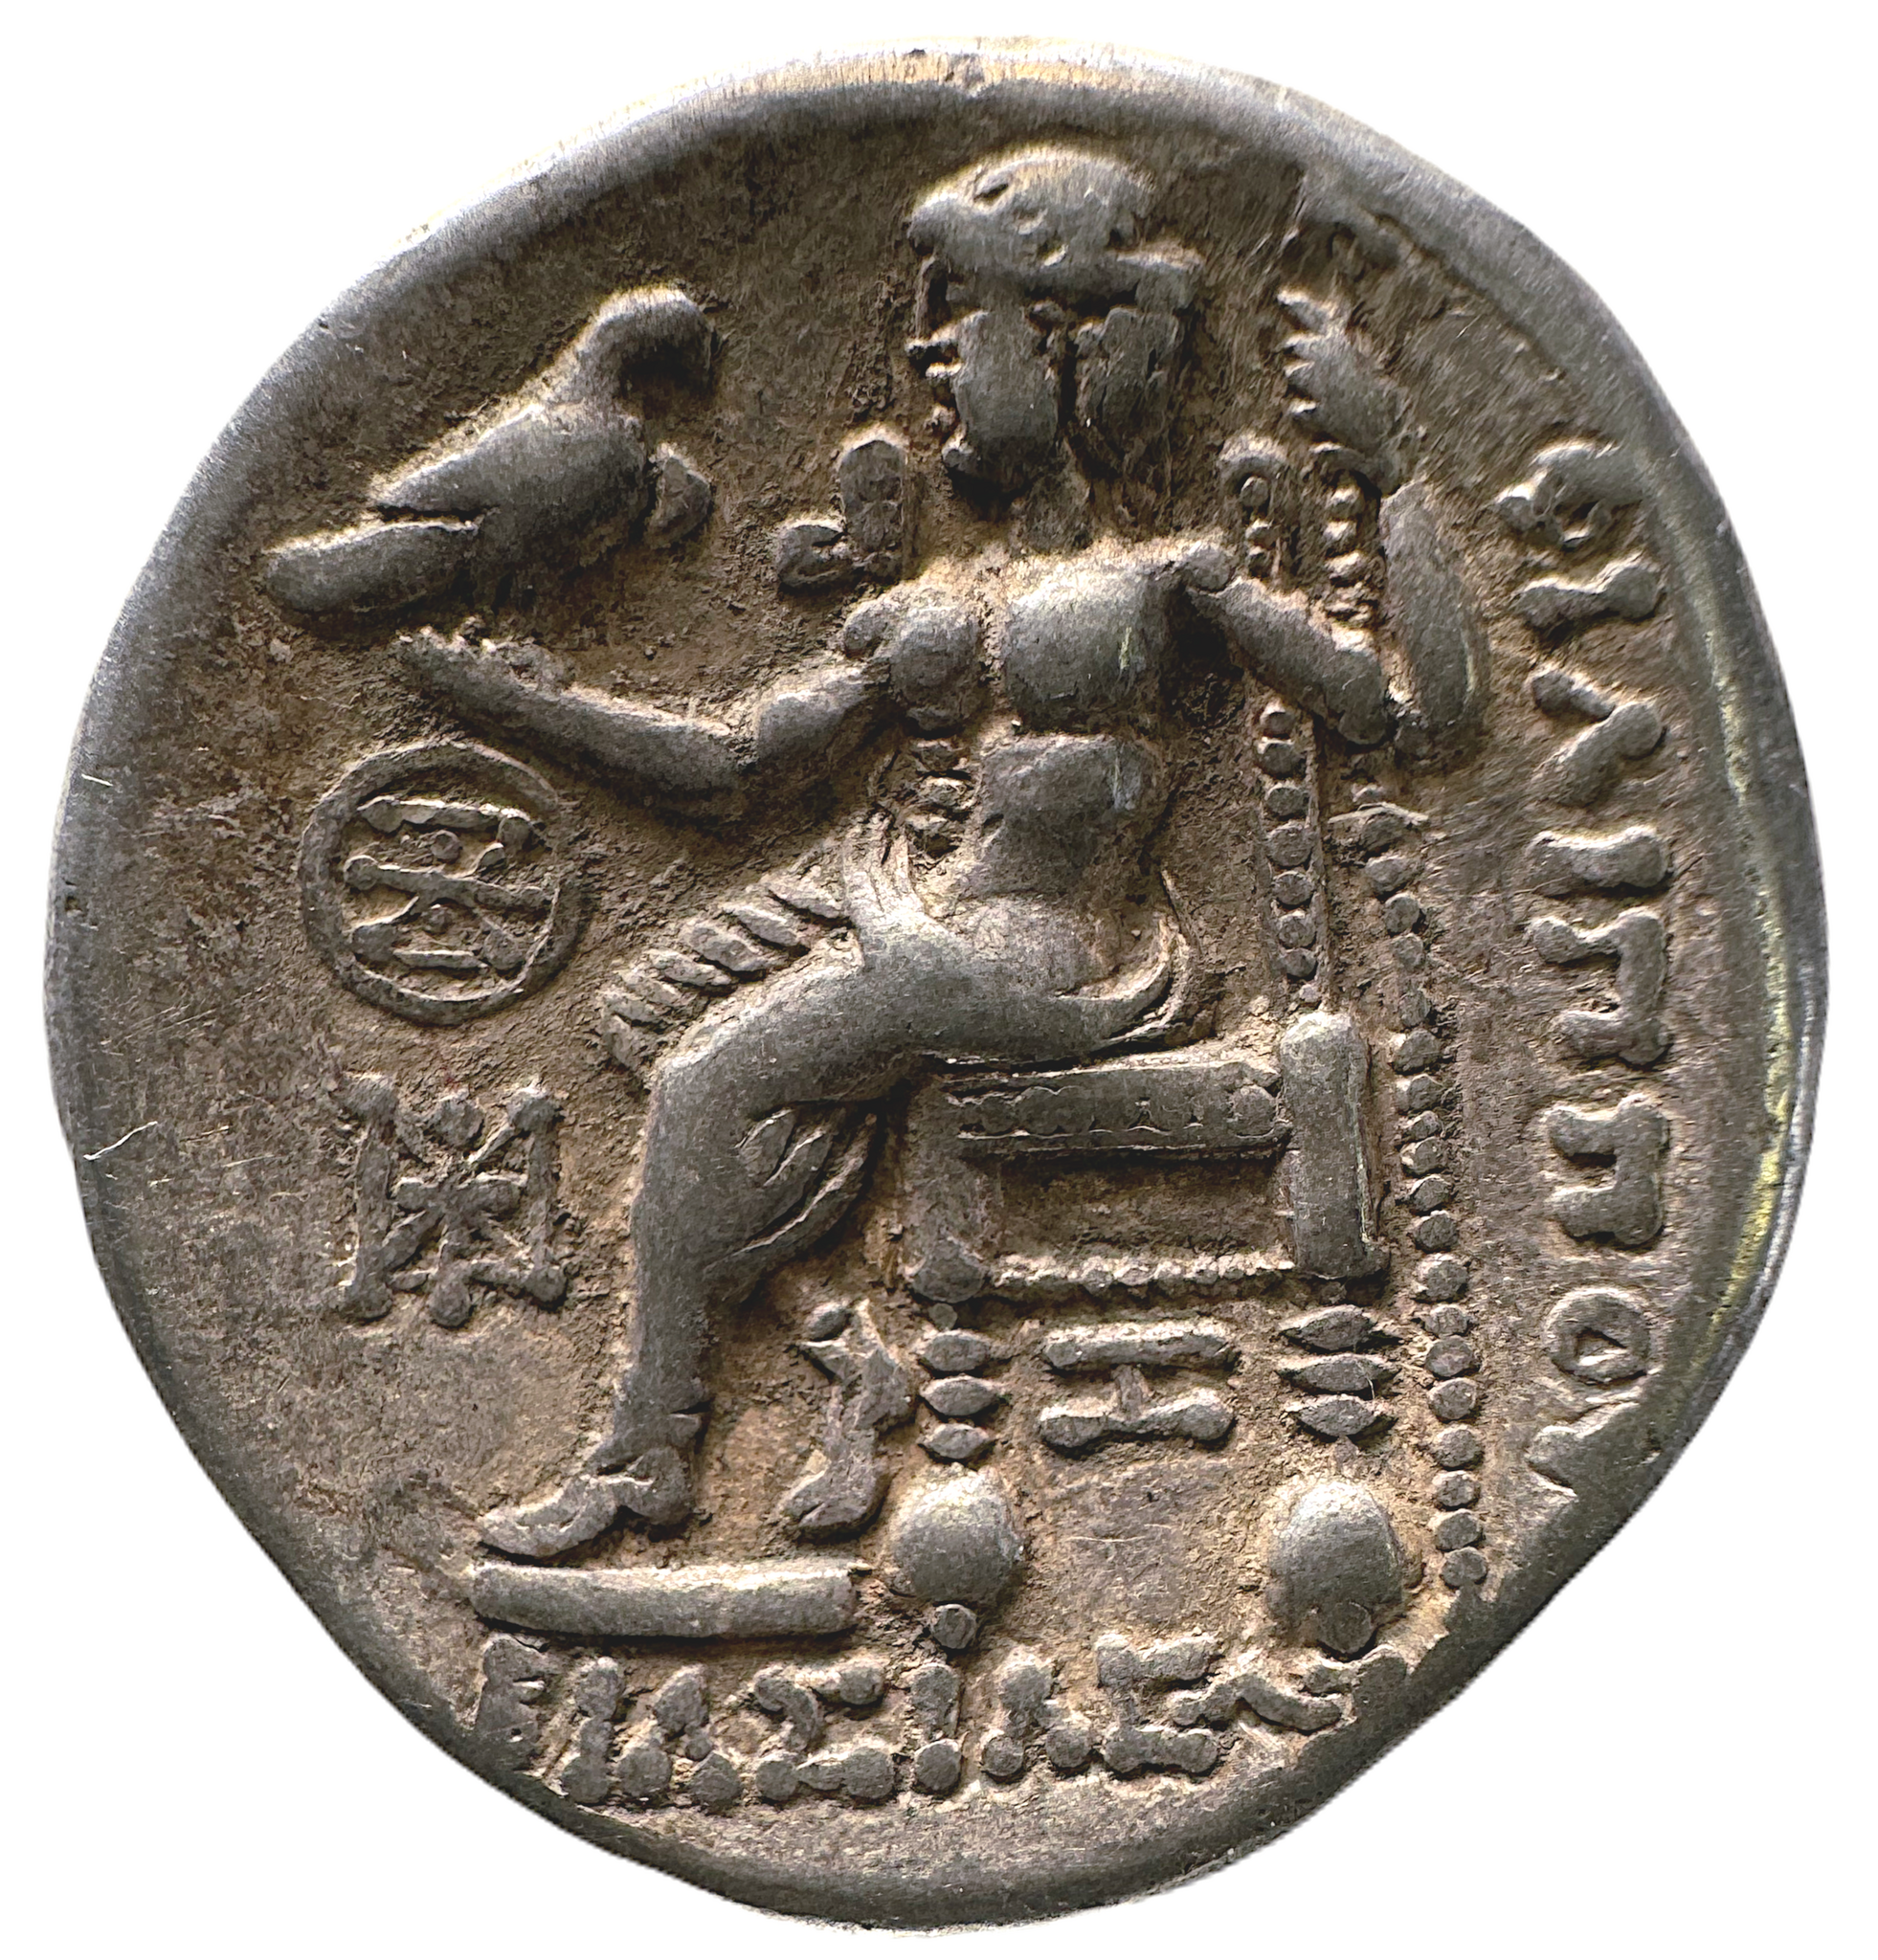 Makedonien. Tetradrachm med utseende som Alexander den Store, men präglad under efterkommande kung, Philip III Arrhidaios, 323-317 f.Kr.